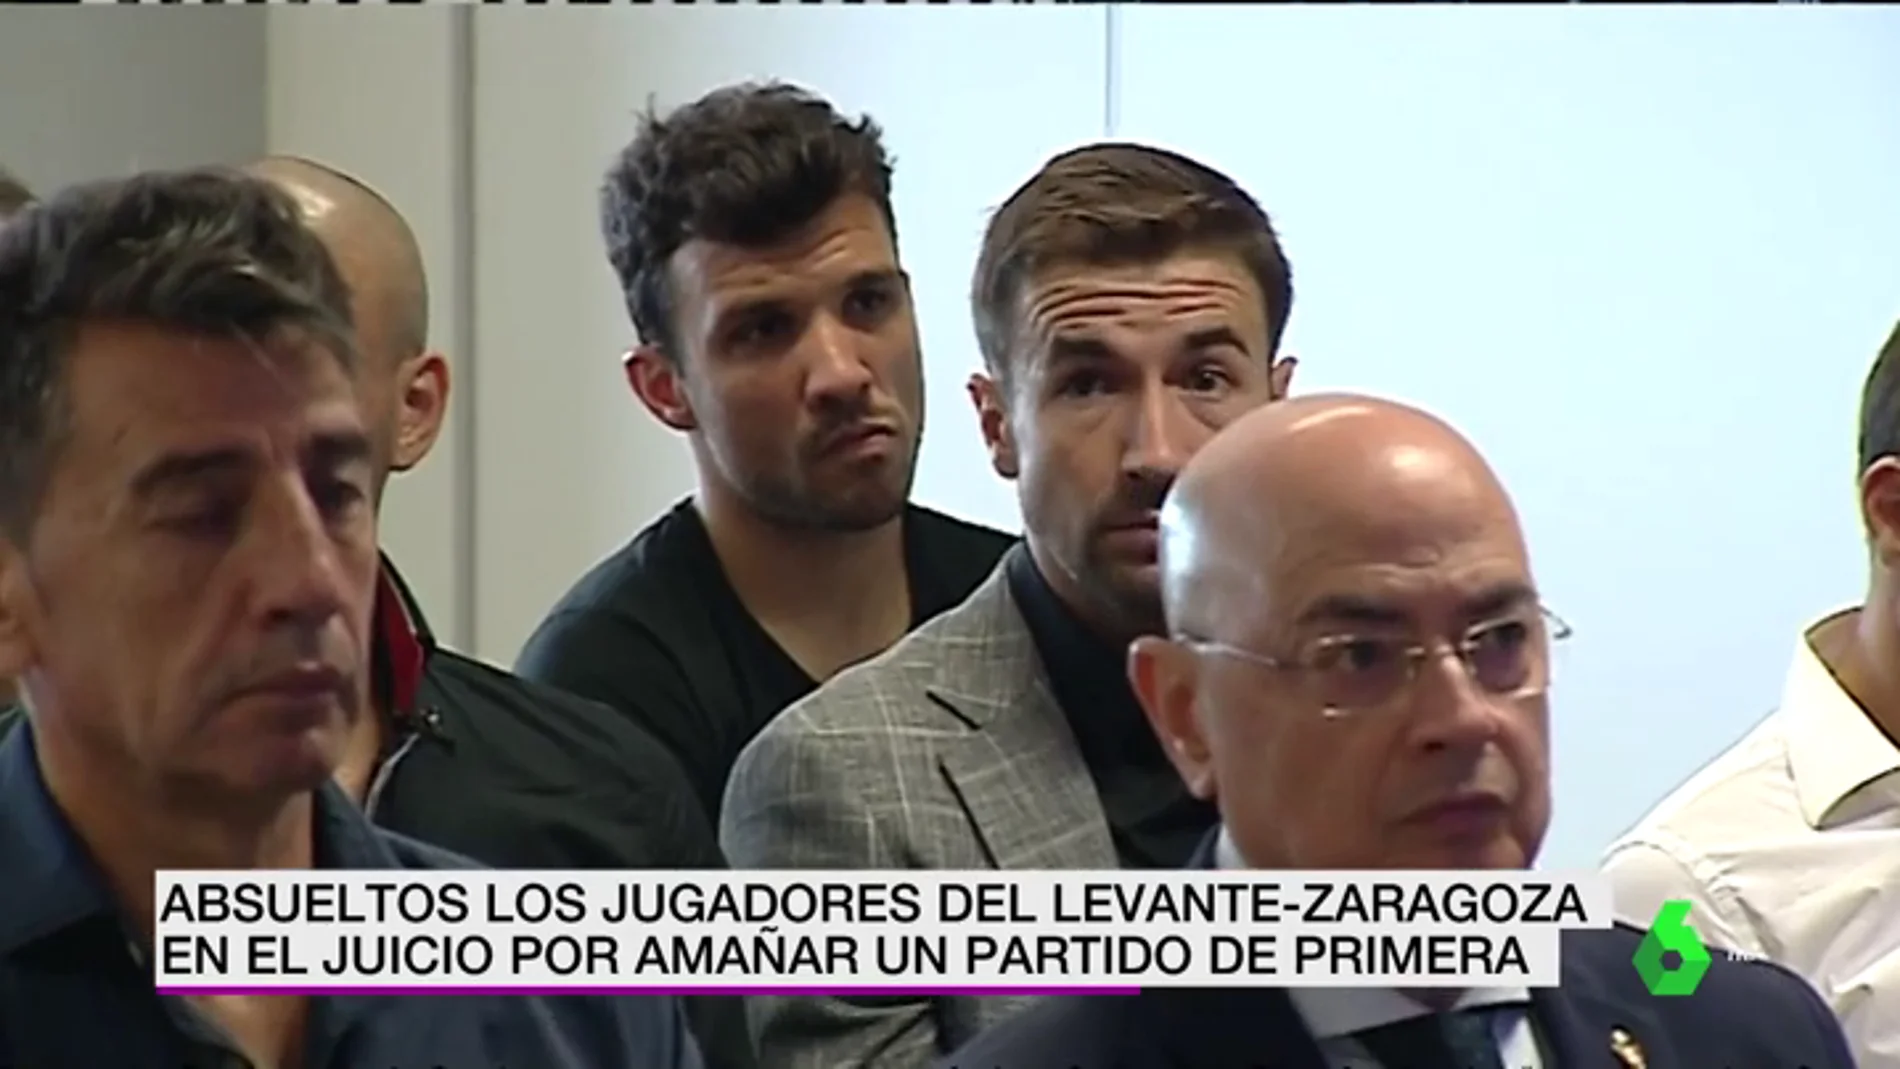 El juez absuelve a los jugadores acusados de amaño por el Levante-Zaragoza de 2011 y condena a dos exdirectivos maños